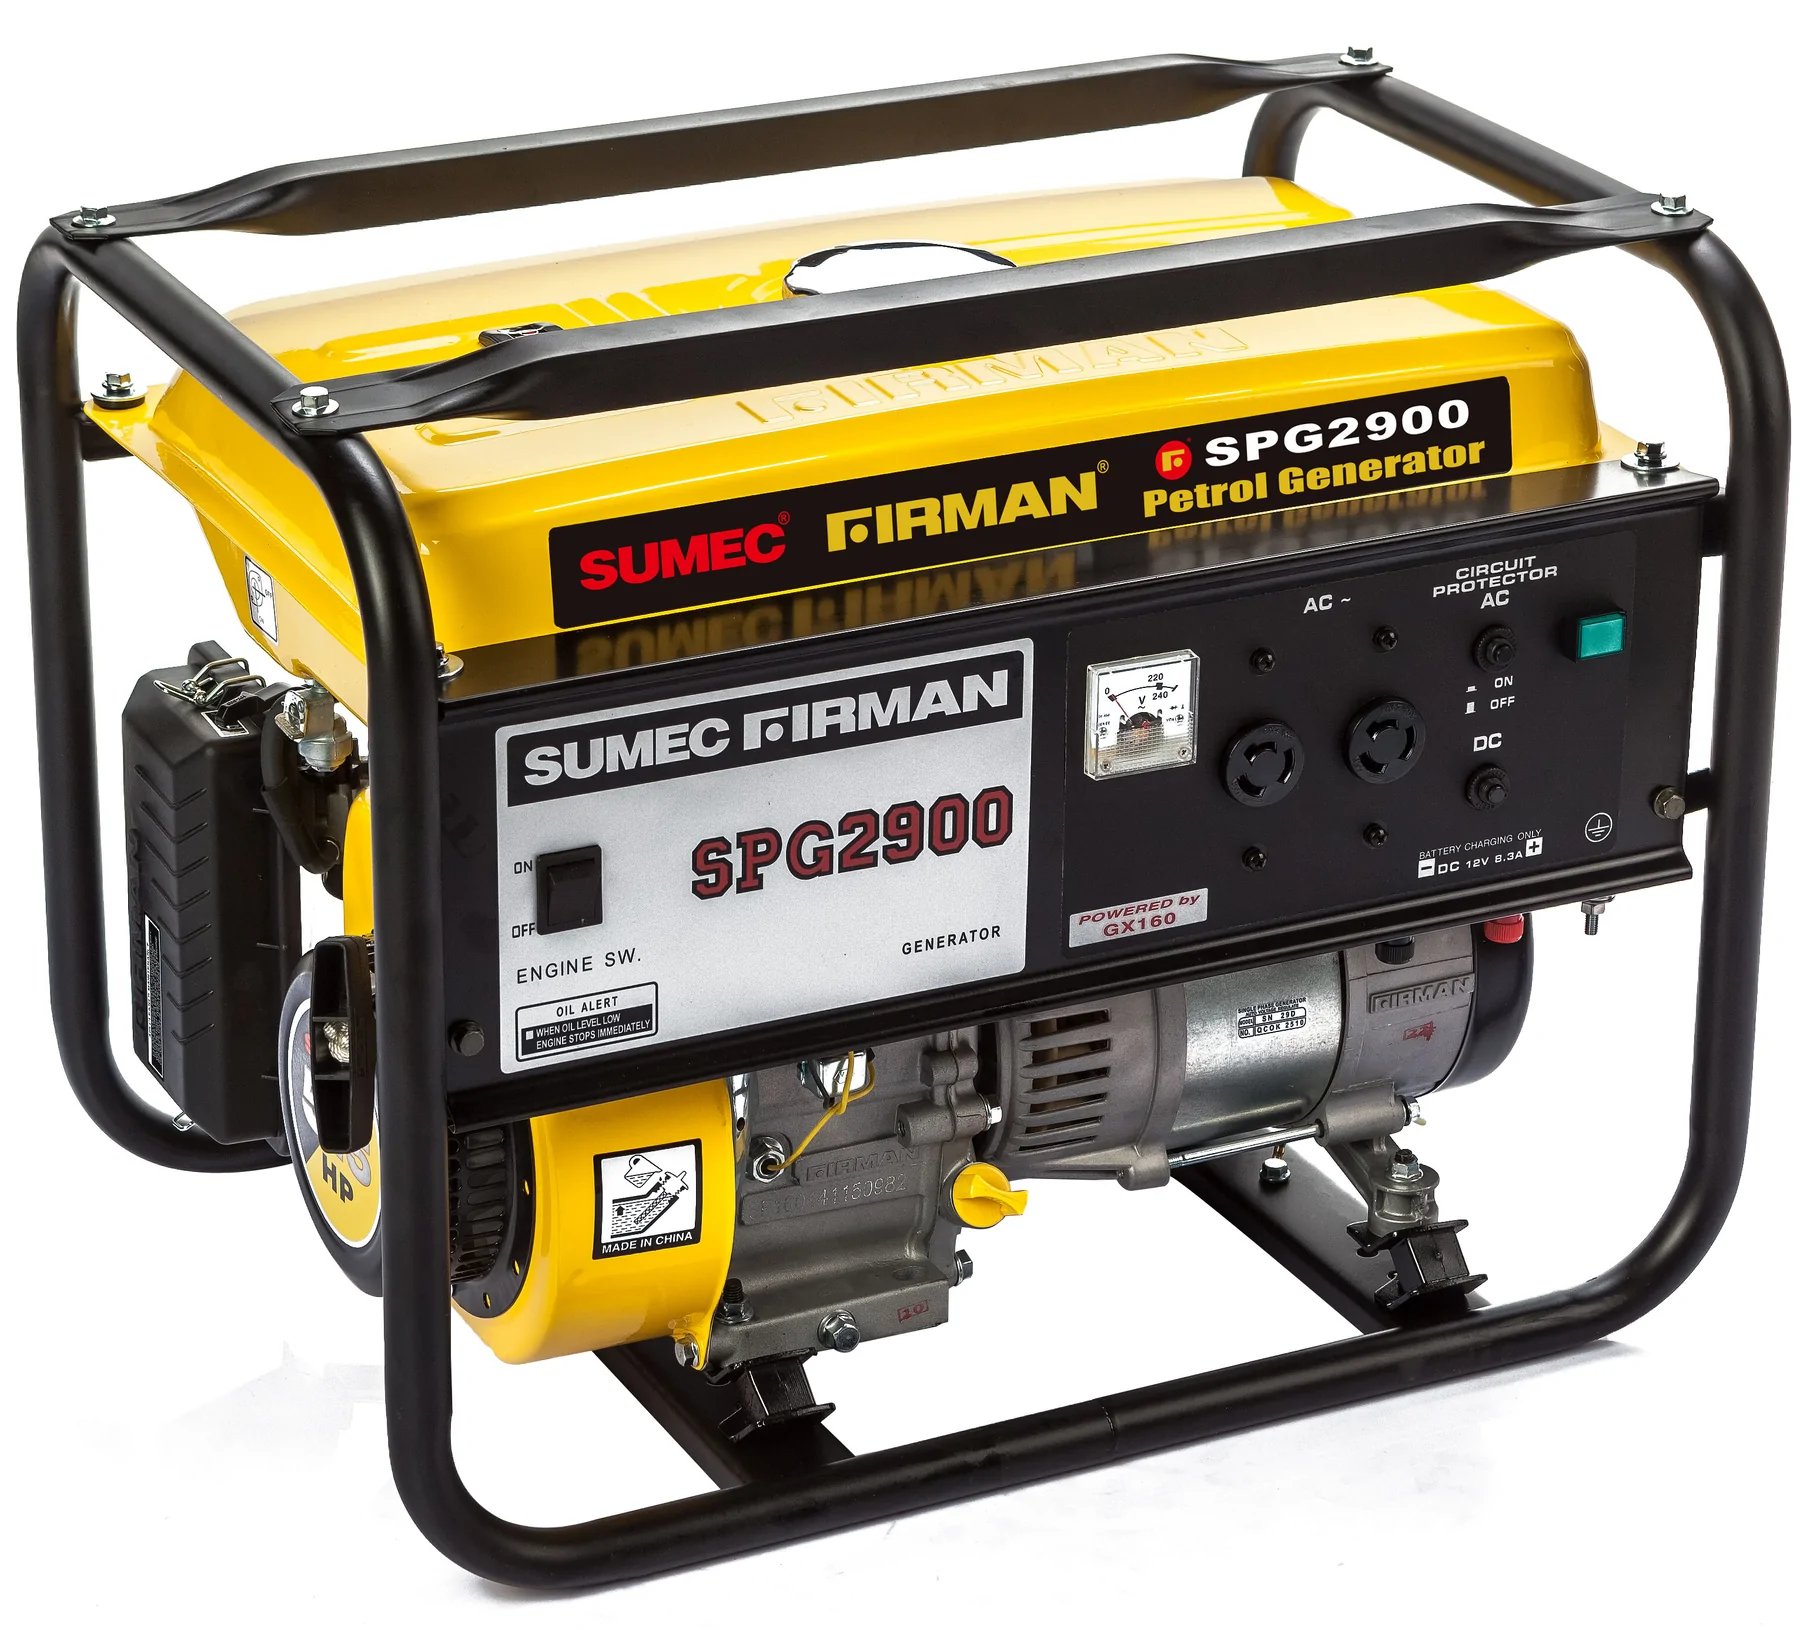 Sumec Firman 2.0kva Manual Generator - SPG2900